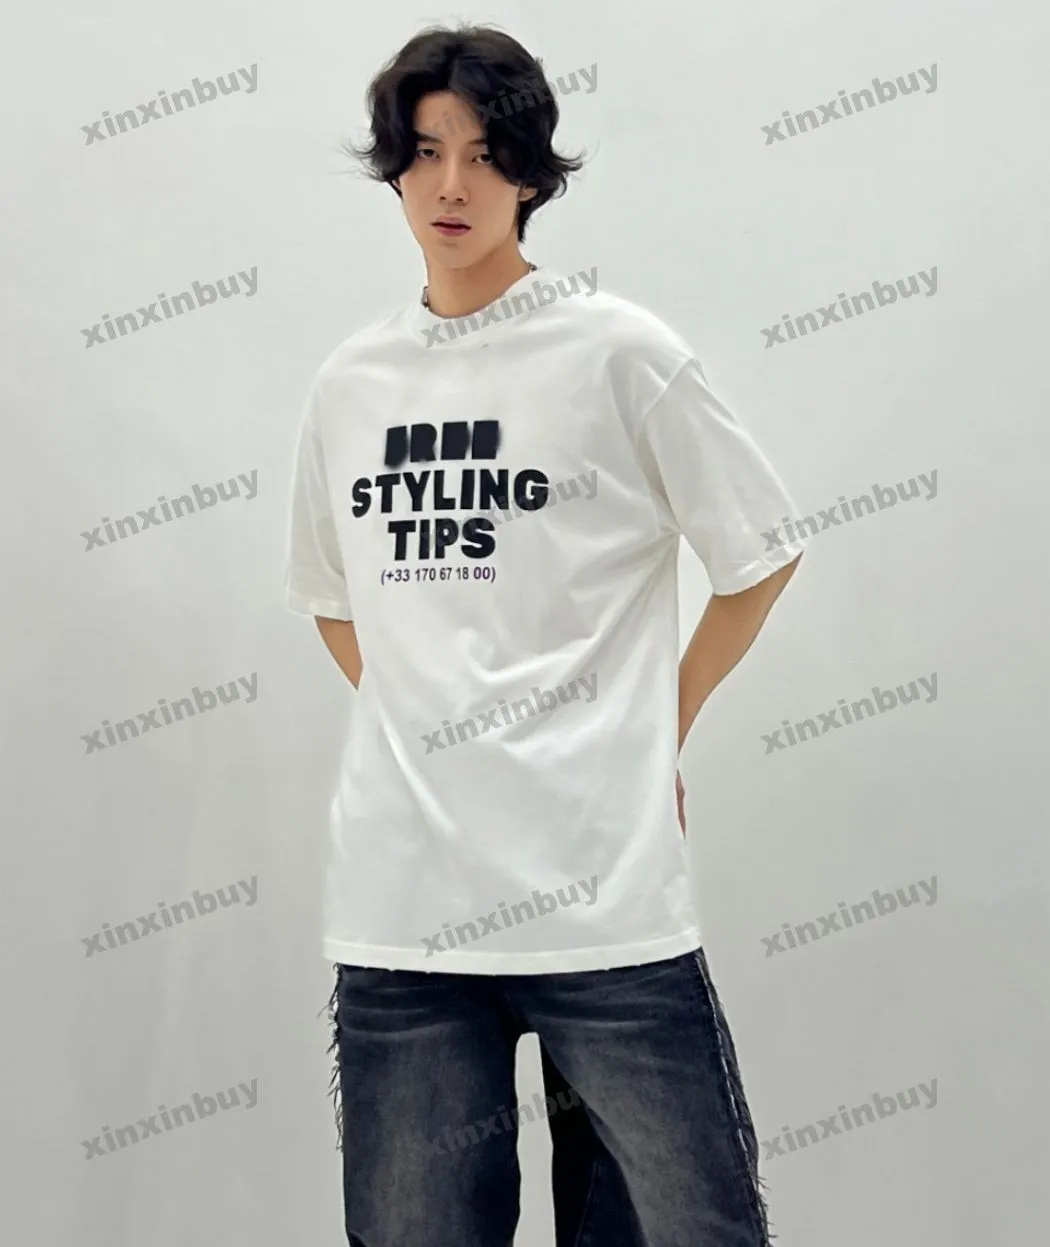 Xinxinbuy Men Designer Tee T Shirt 23ss Paris Free Styling Tips Letter Print Druku